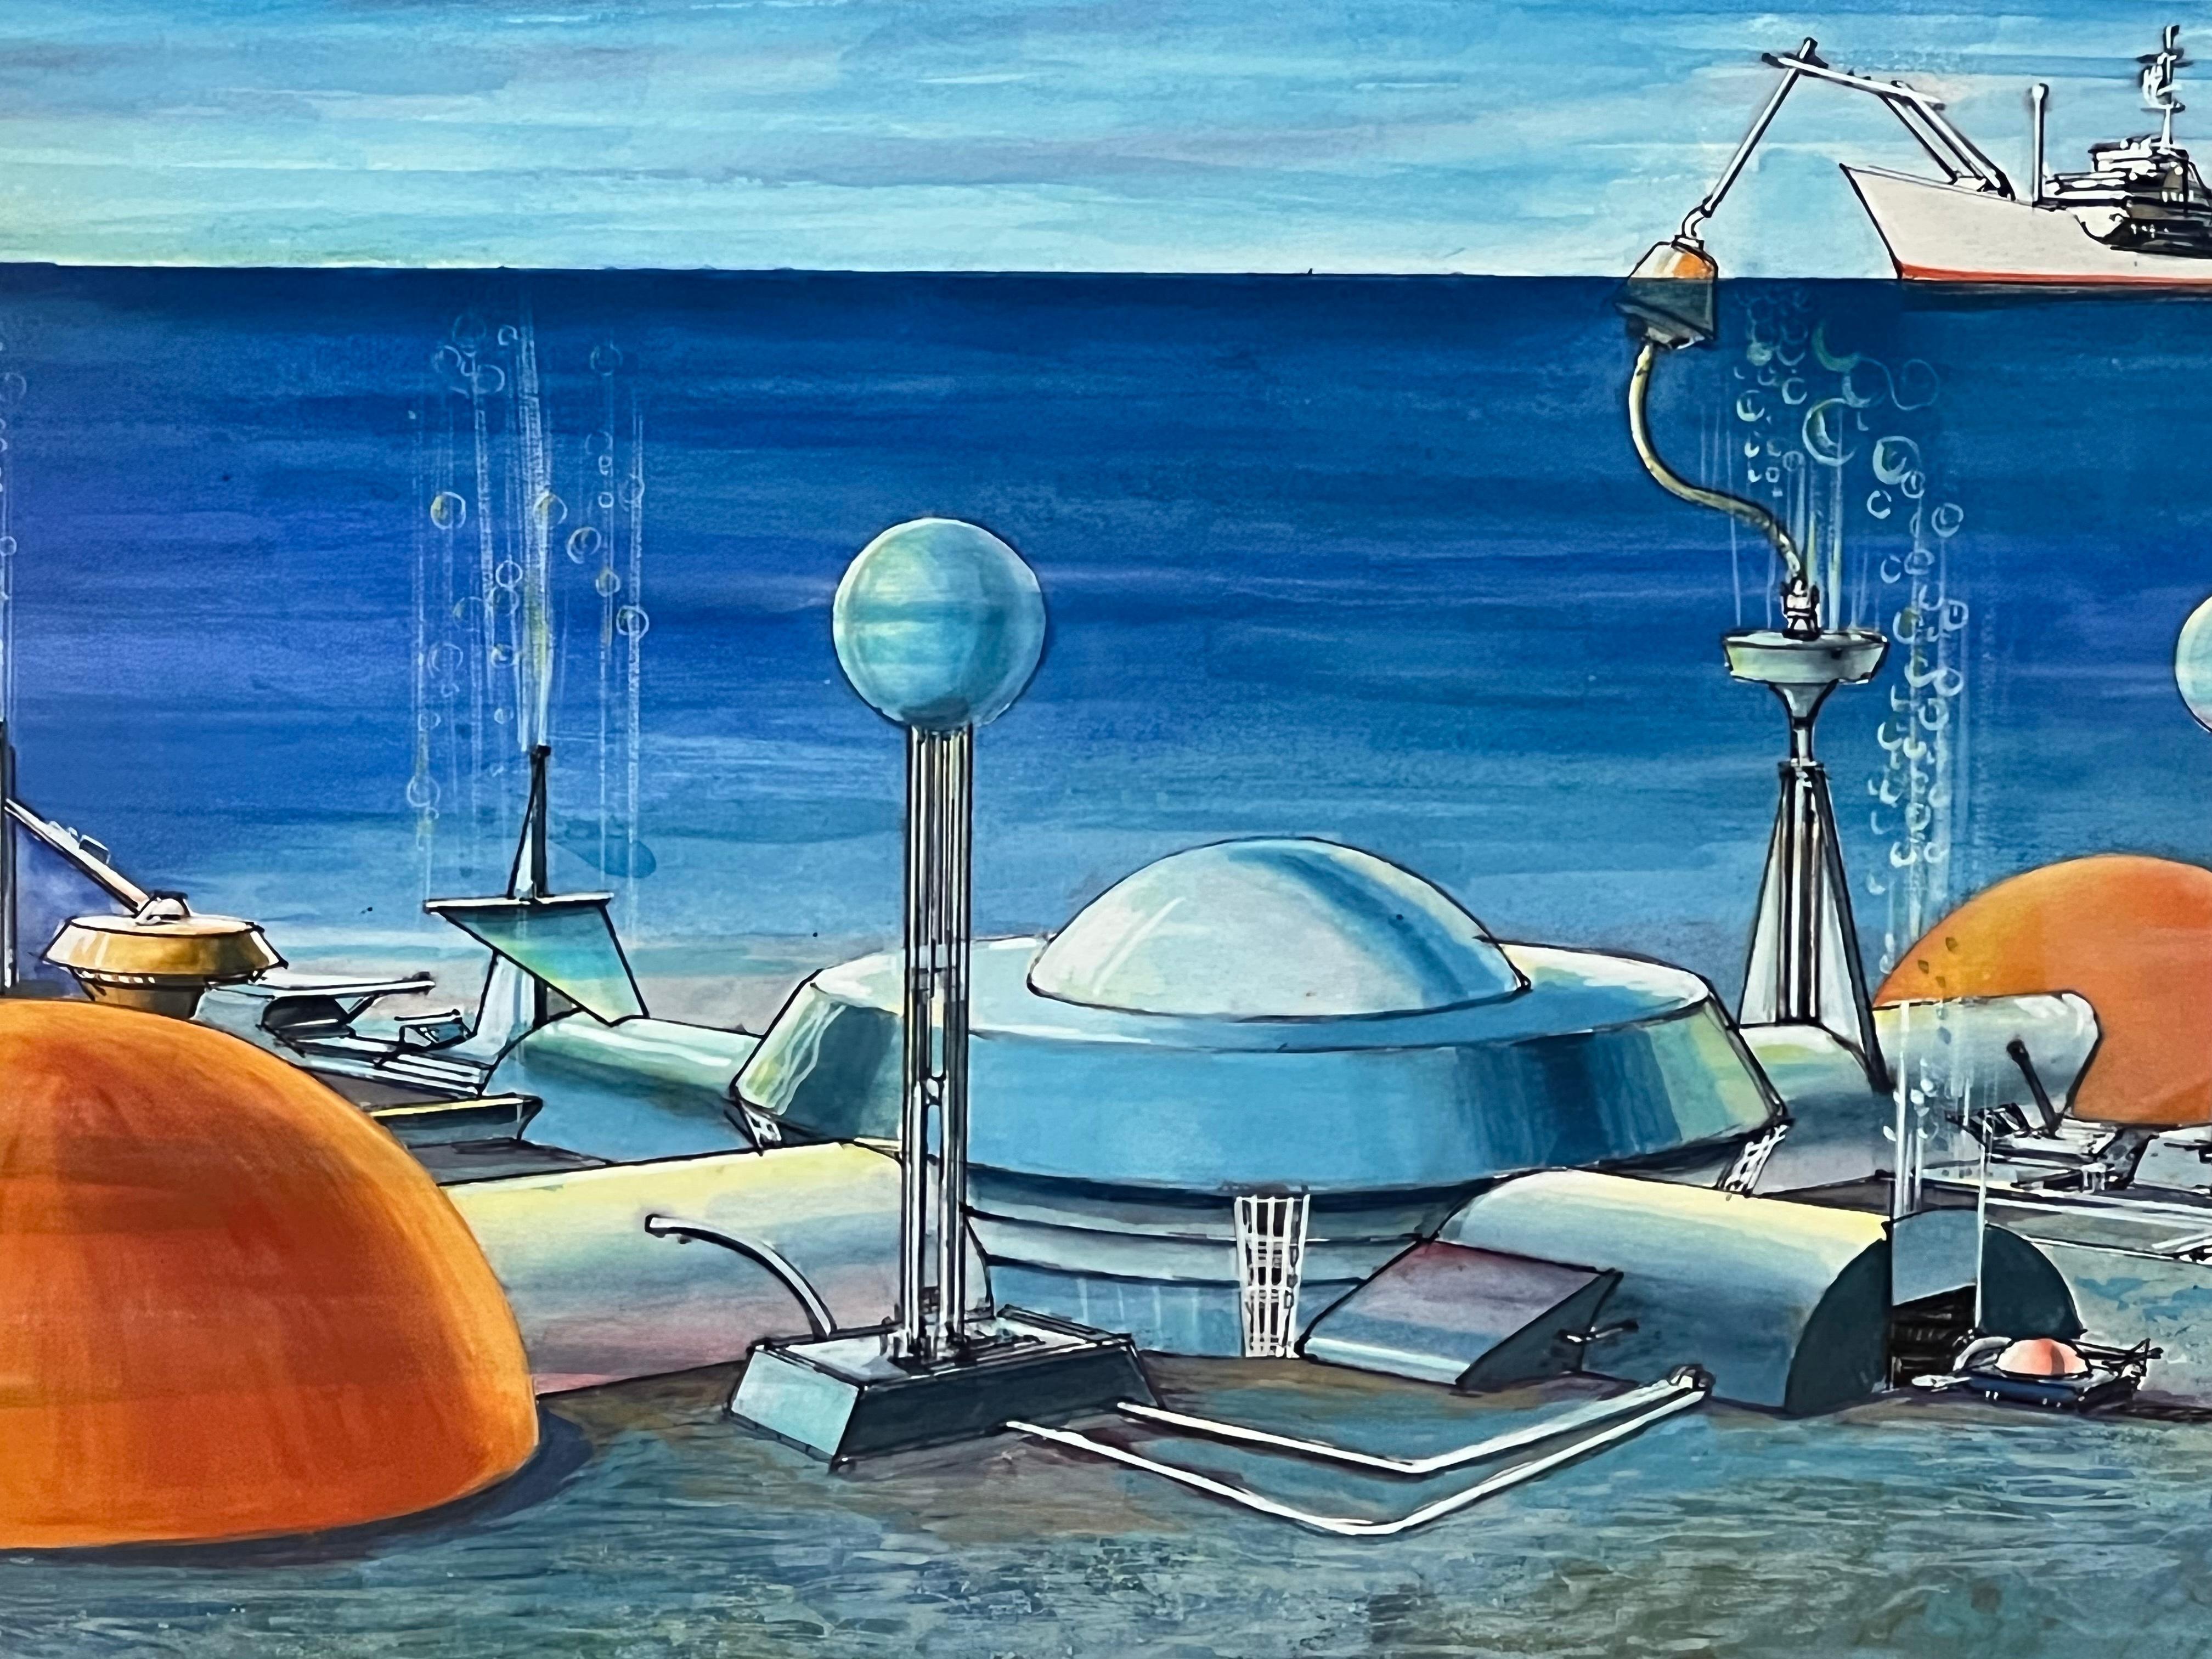 American Submarine Dystopia #2 Futuristic Underwater Landscape Gouache For Sale